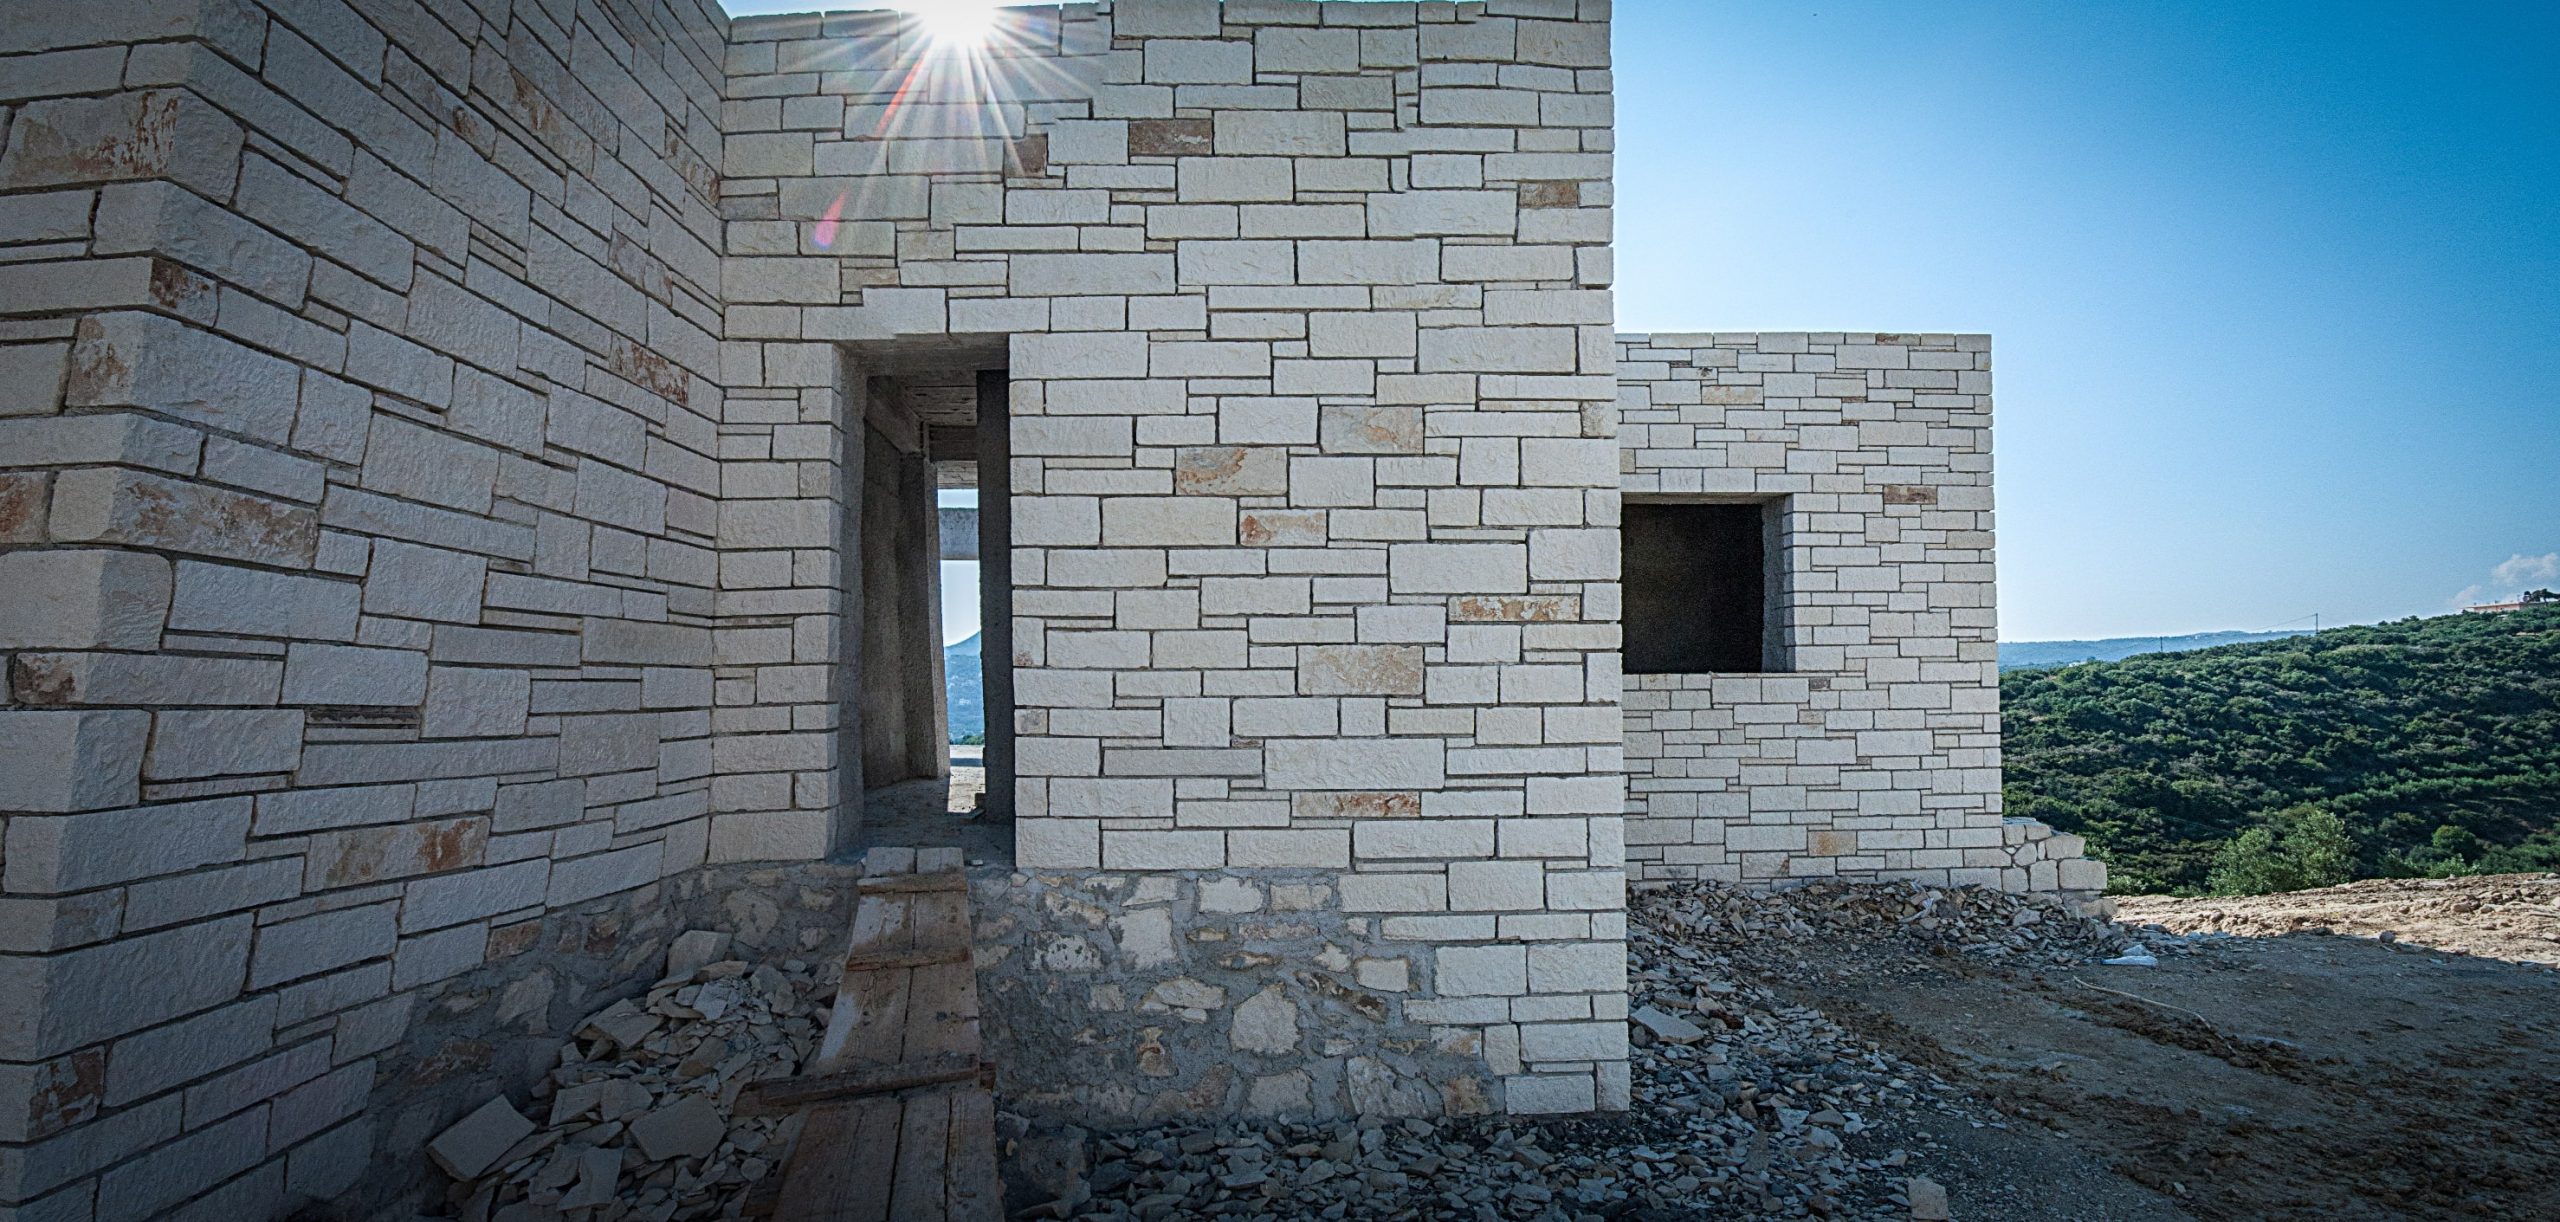 Κτίσιμο σπιτιού στα Χανιά- Ανακαίνιση και αναπαλαίωση κατοικιών στην Κρήτη - Κυριακίδης Κατασκευαστική